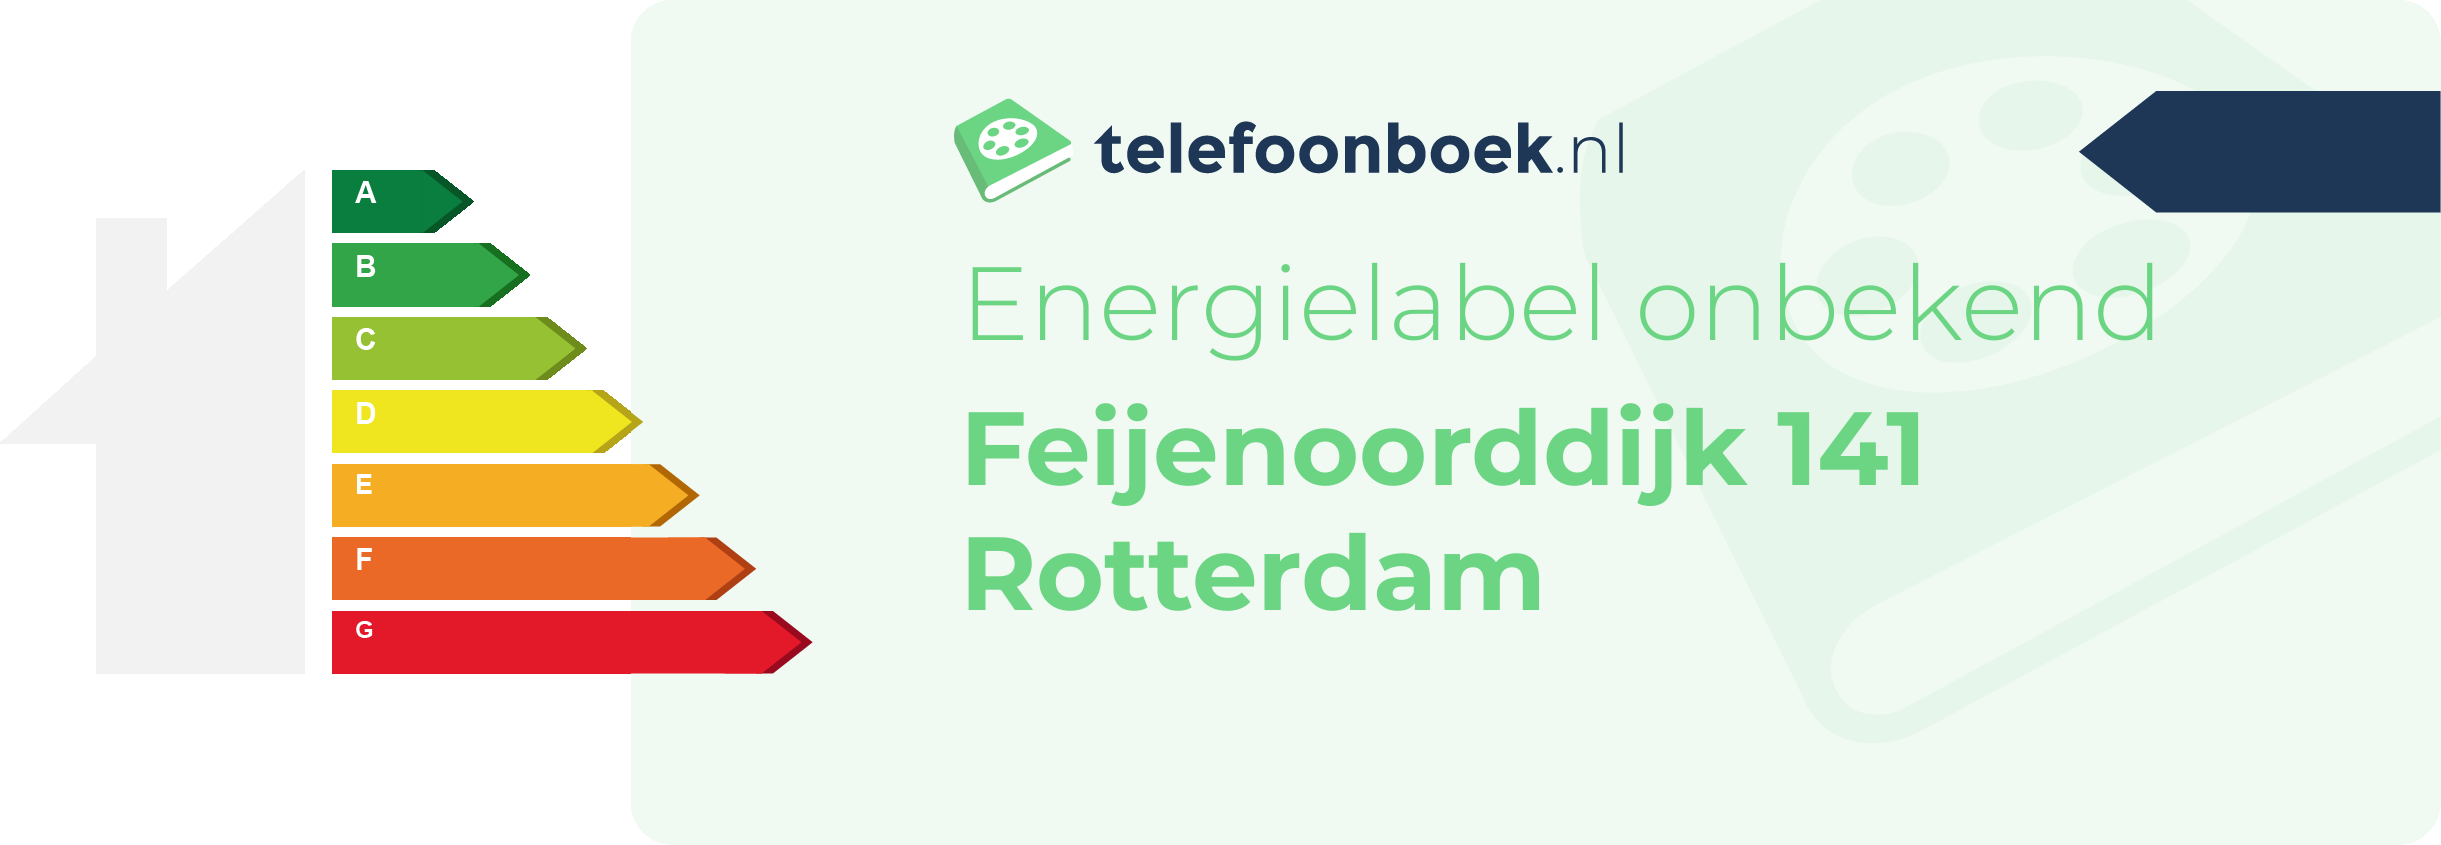 Energielabel Feijenoorddijk 141 Rotterdam